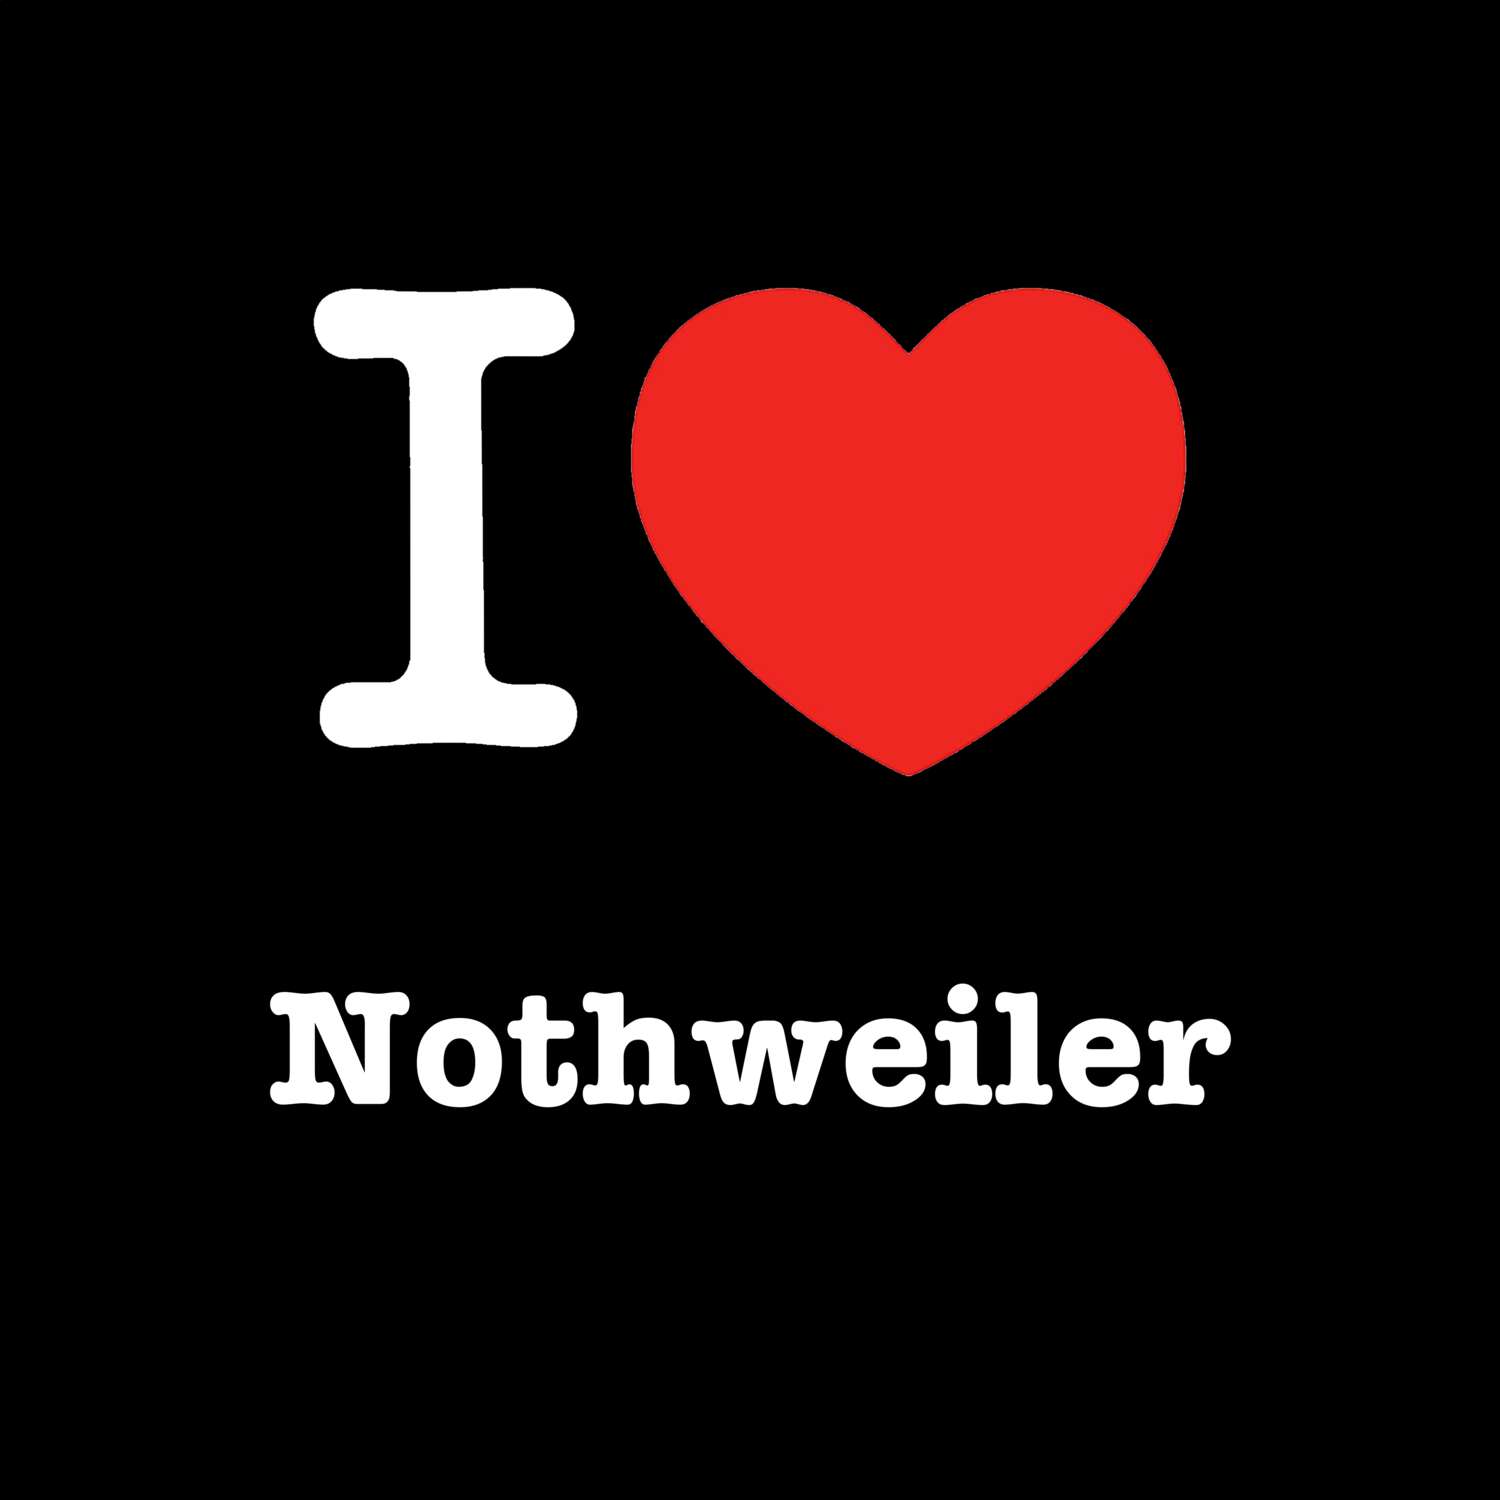 Nothweiler T-Shirt »I love«